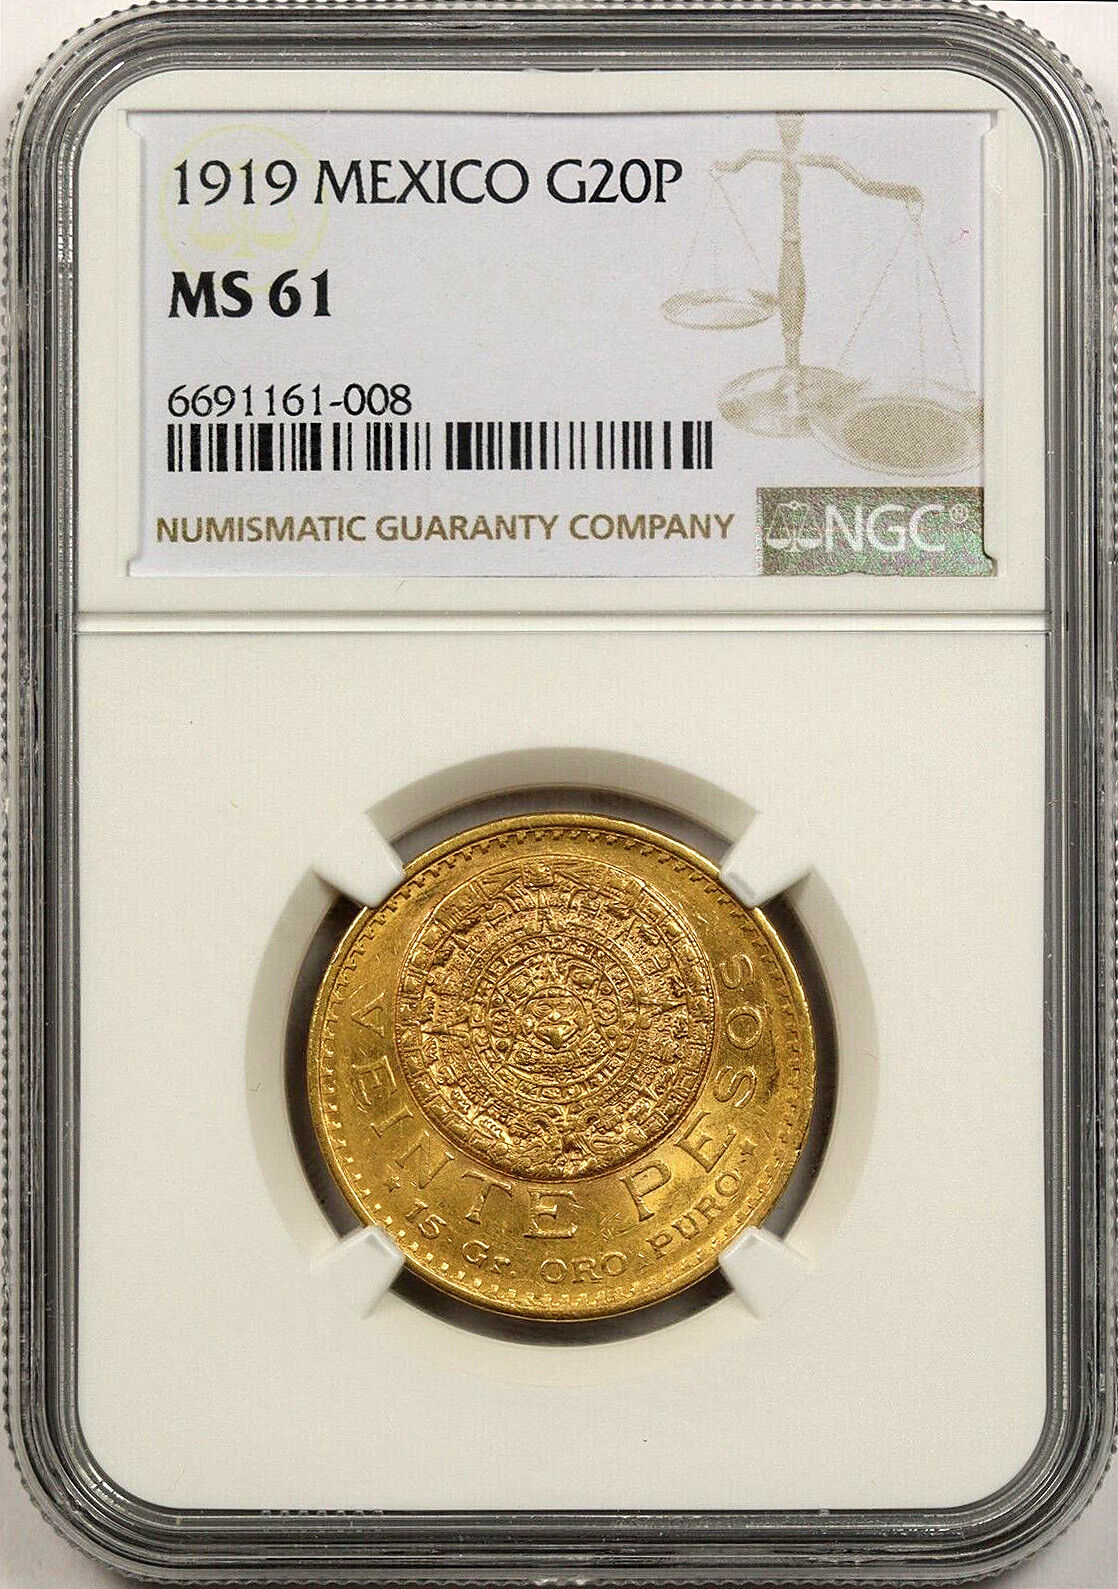 1919 Mexico G20P NGC MS 61 Gold 20 Pesos - Very Nice